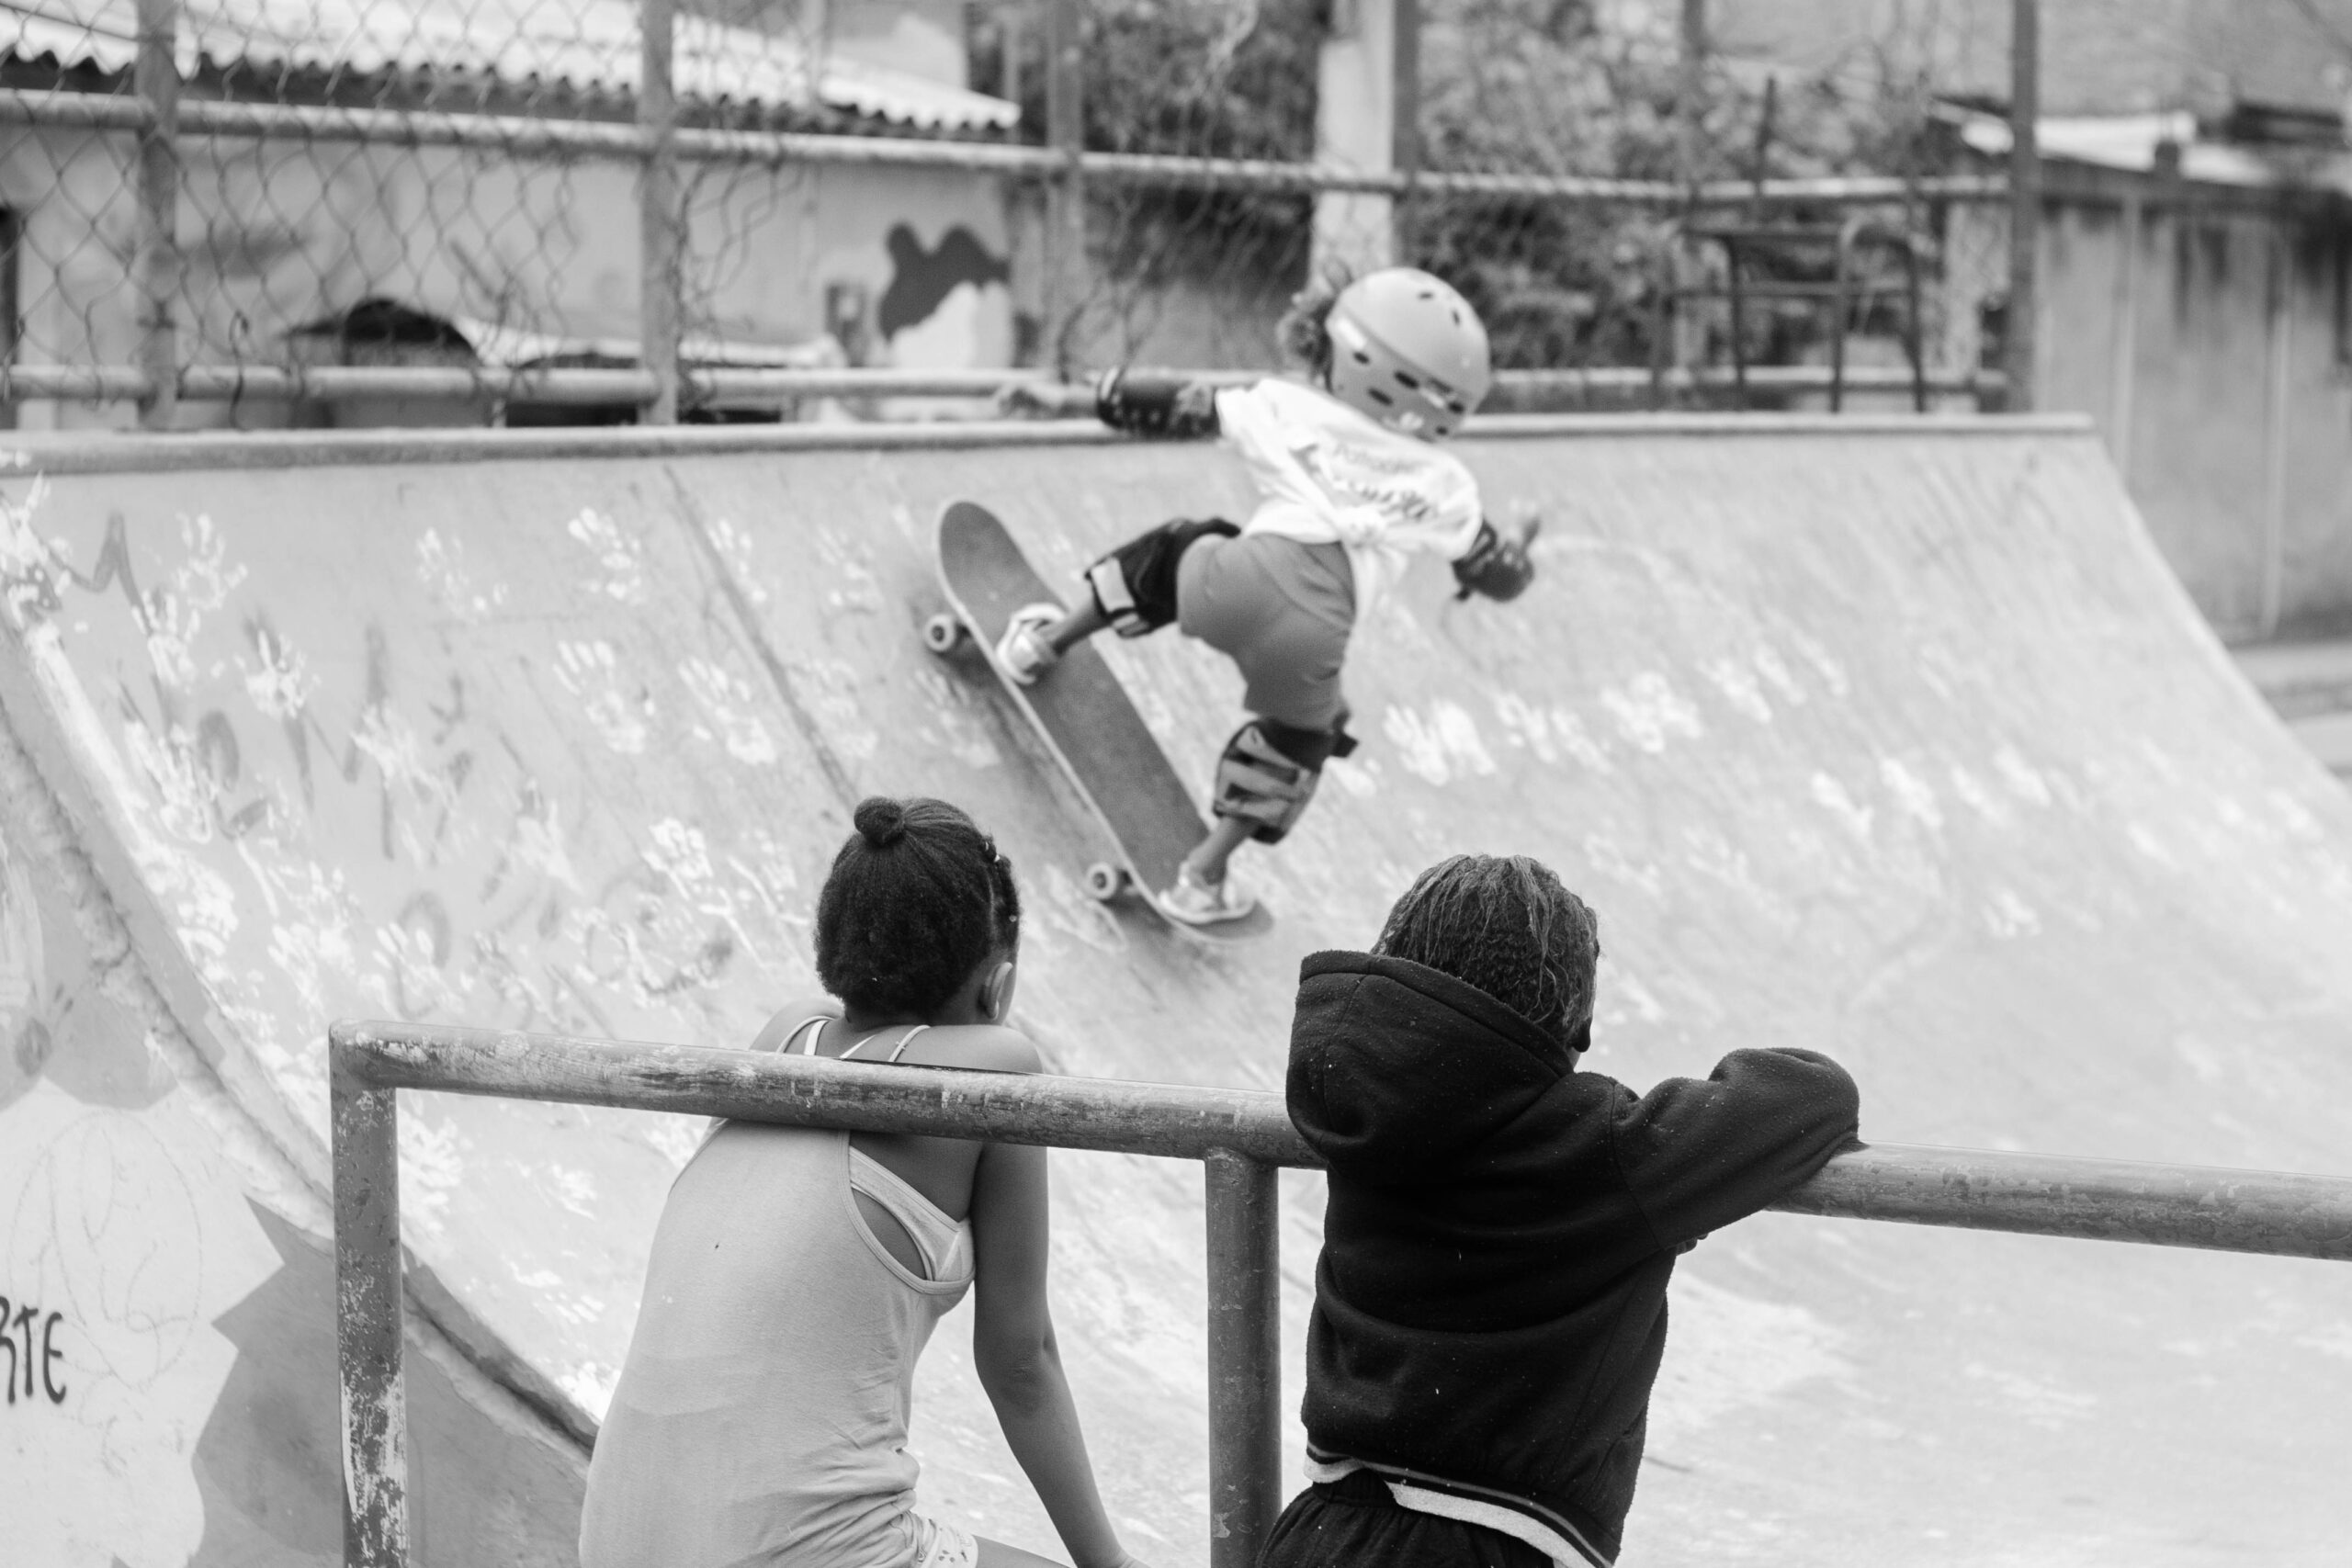 Cdd Skate Arte transforma carência em potência na Favela Cidade de Deus